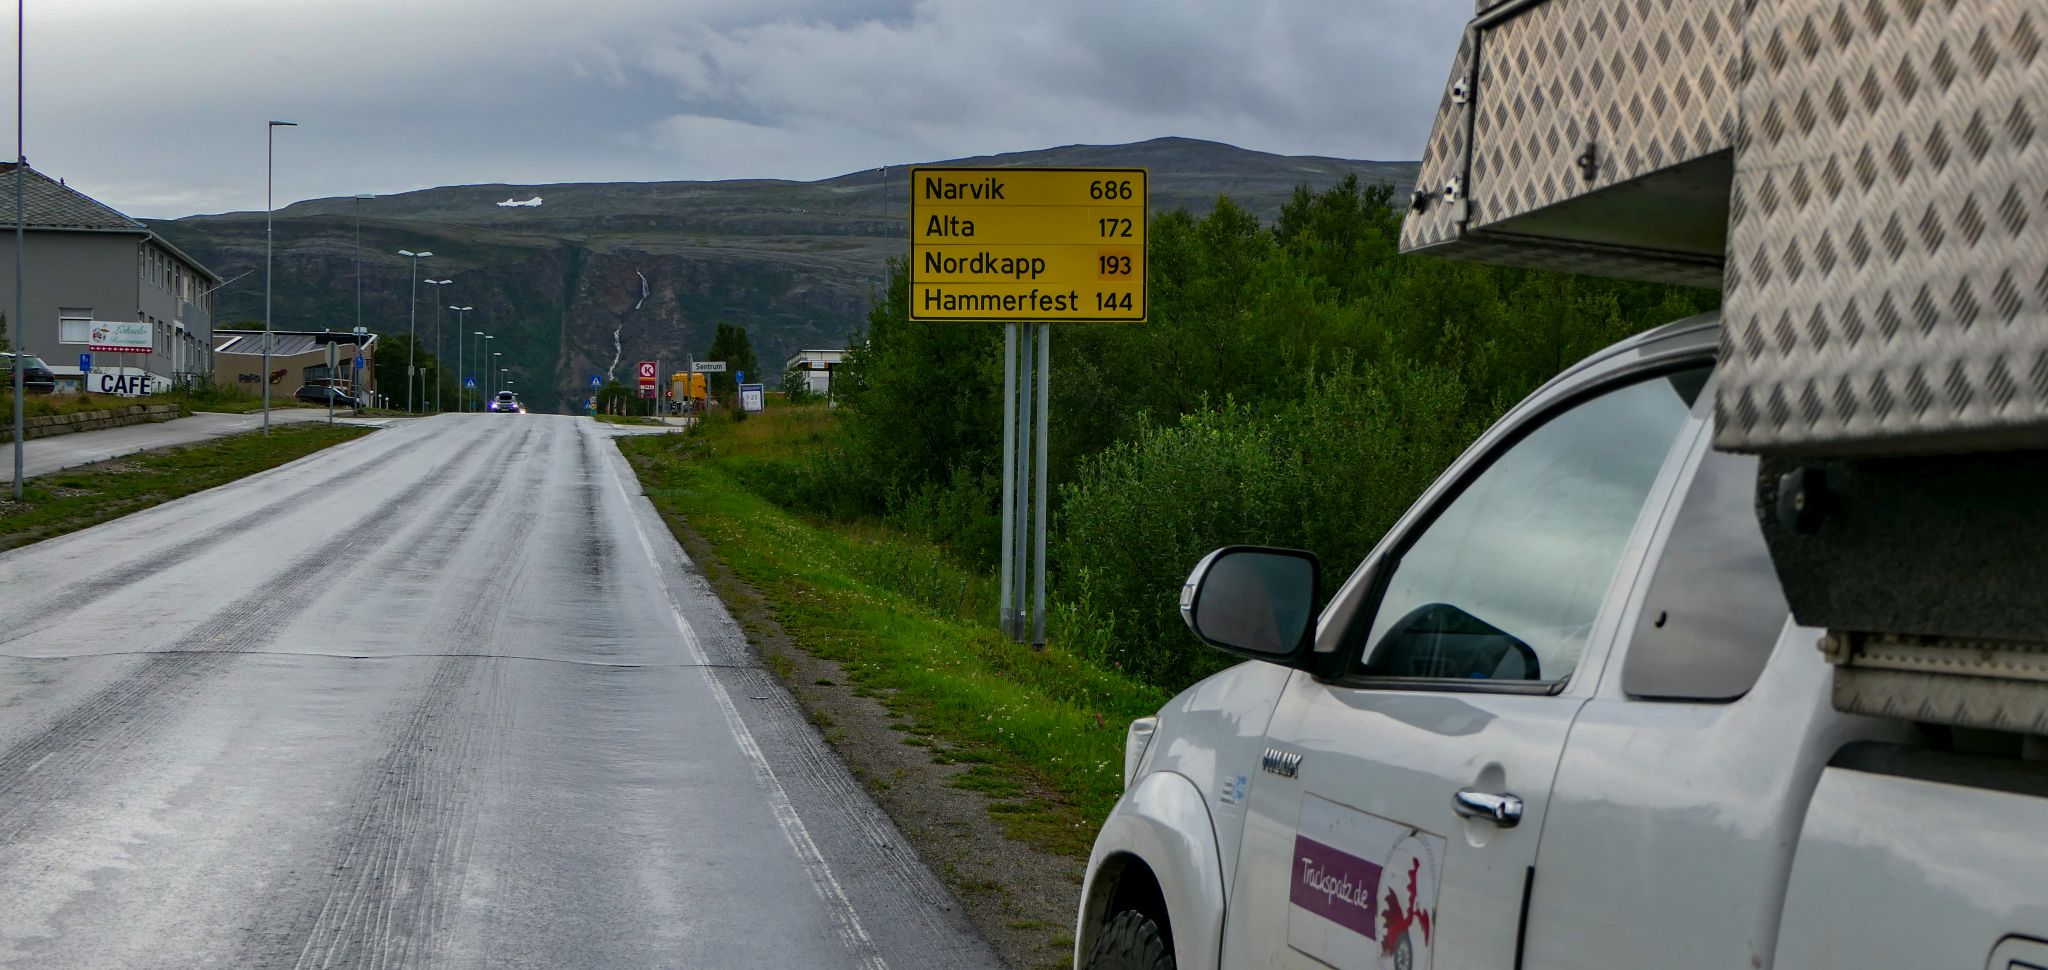 Grenze nach Norwegen überschritten. Das Nordkap ist nahe...